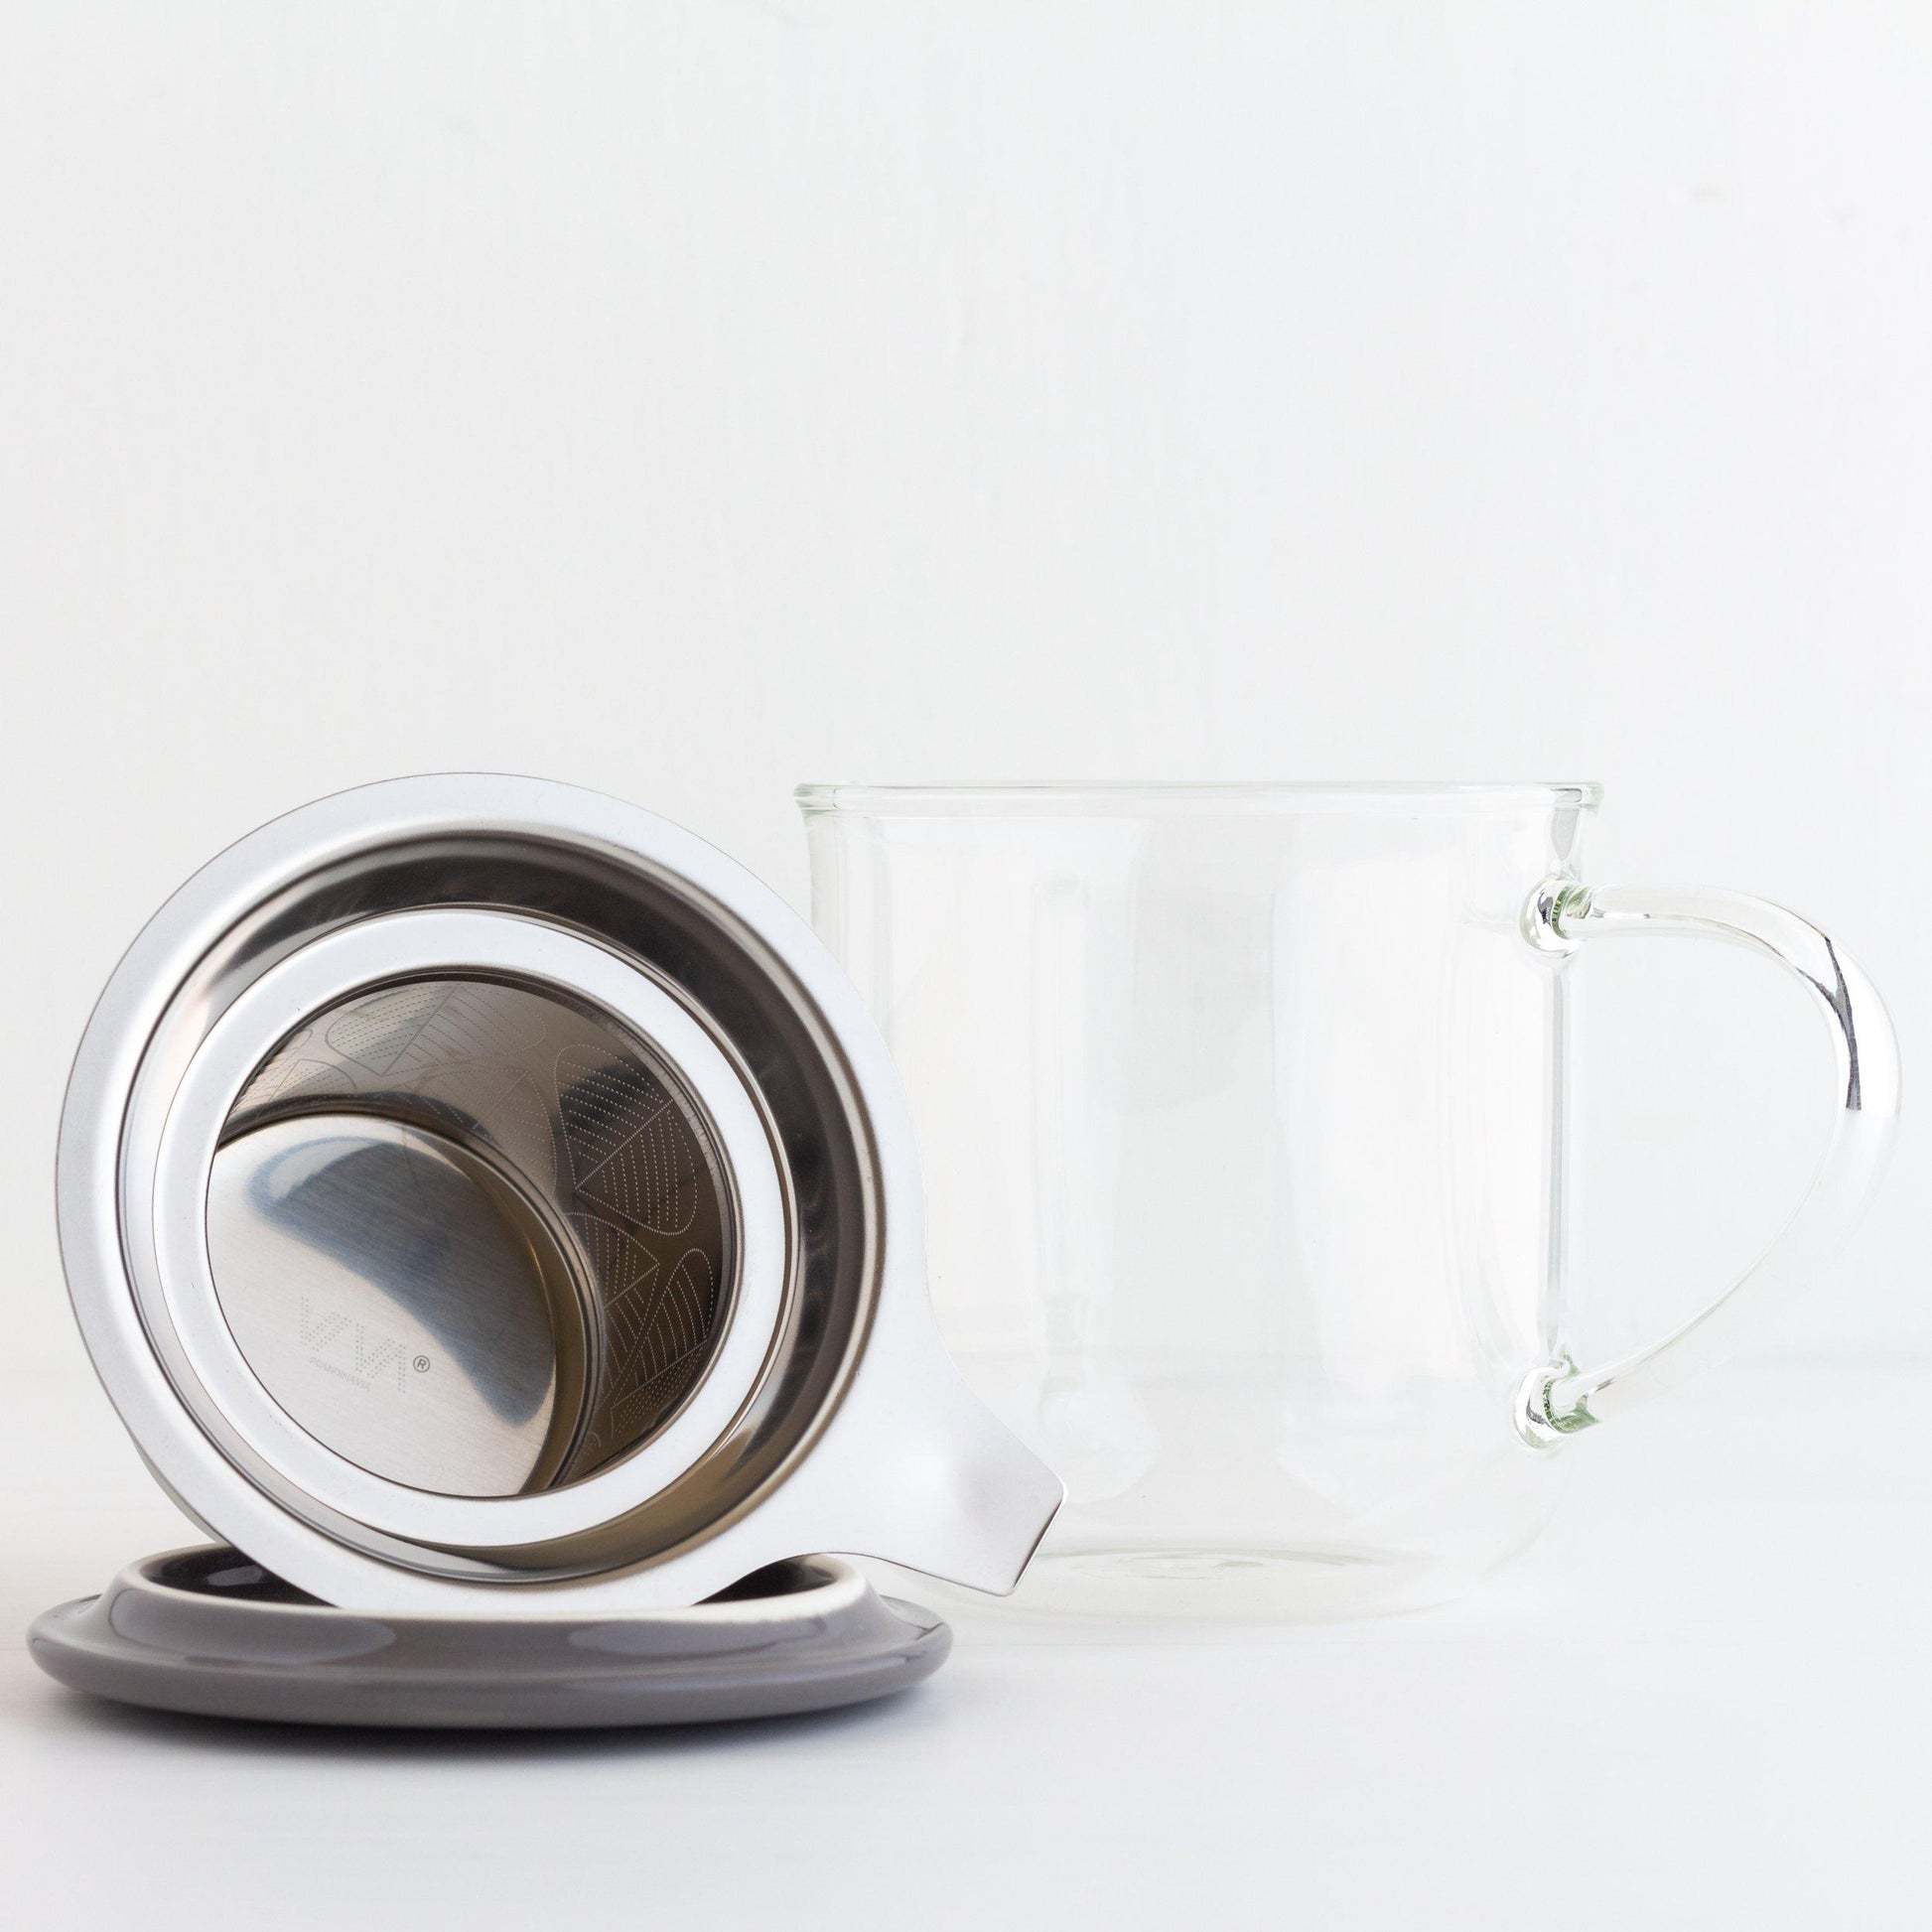 Glass Tea Mug Infuser – Still